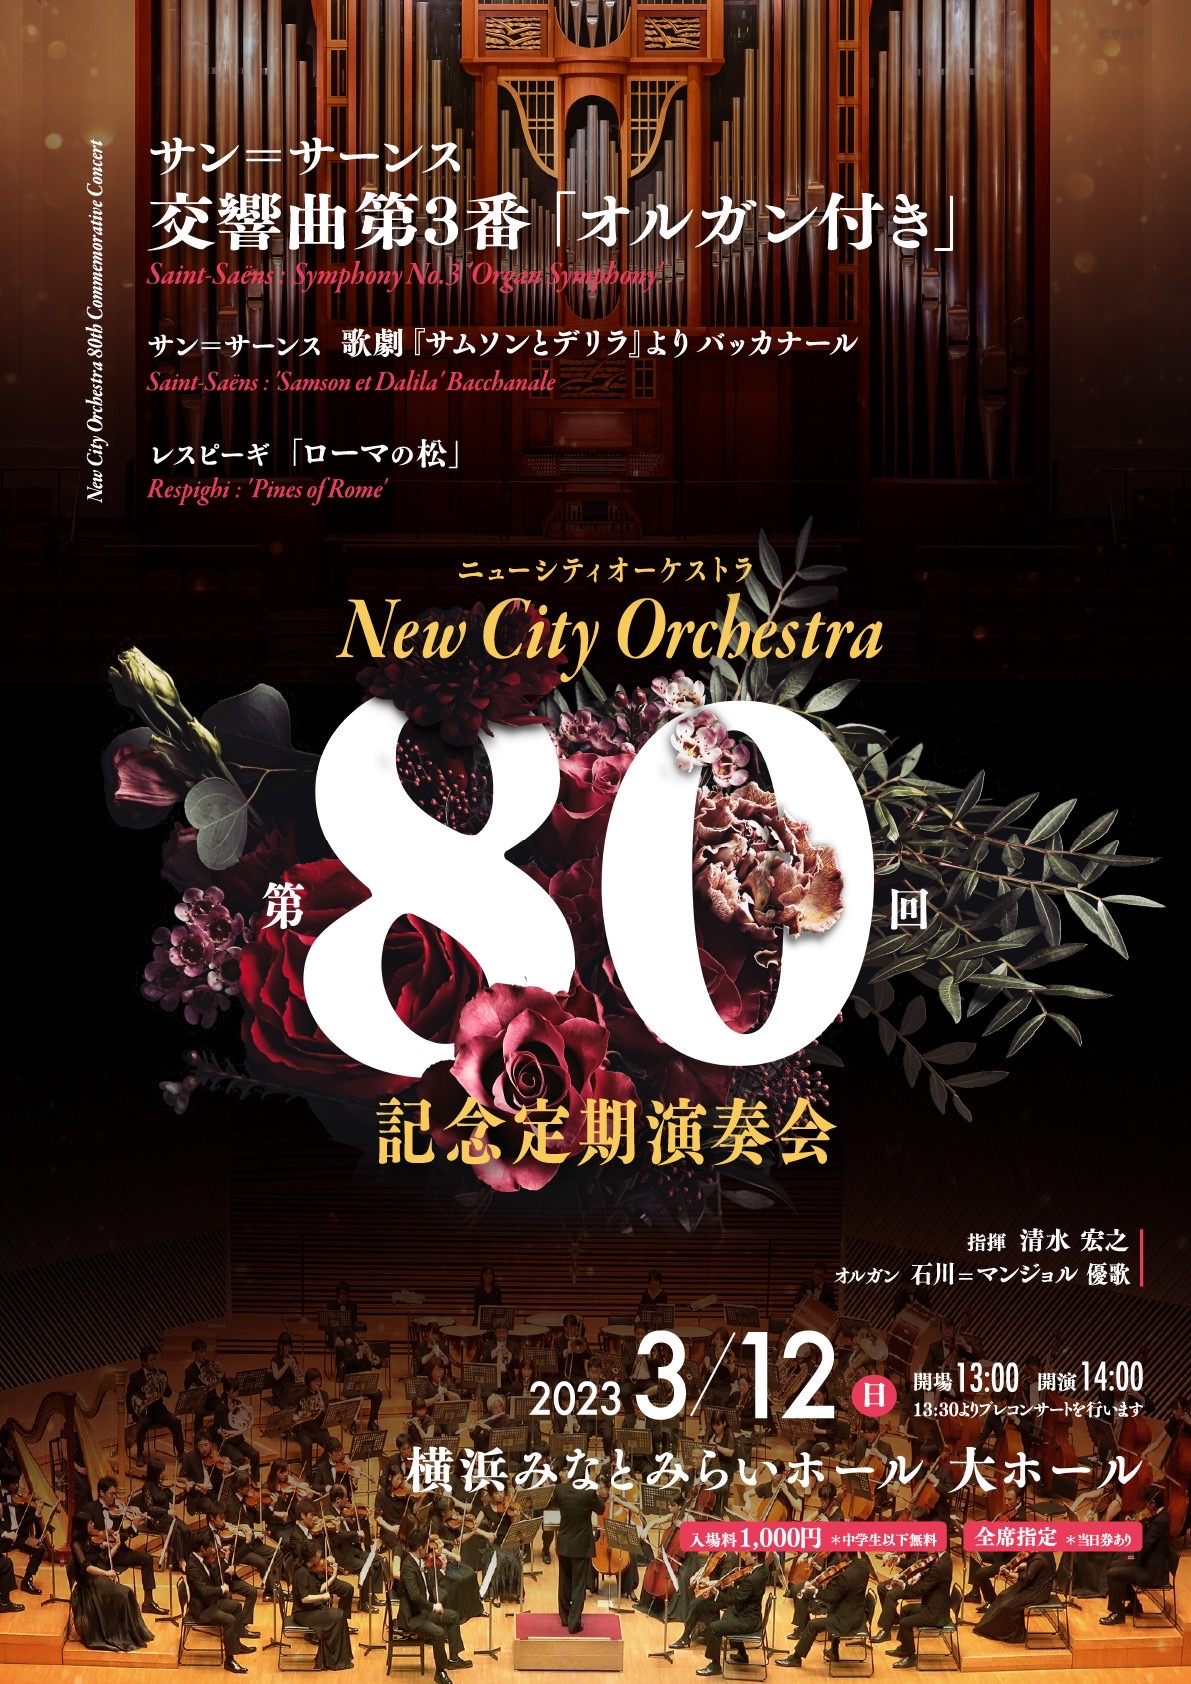 ニューシティオーケストラ 第80回記念定期演奏会の画像